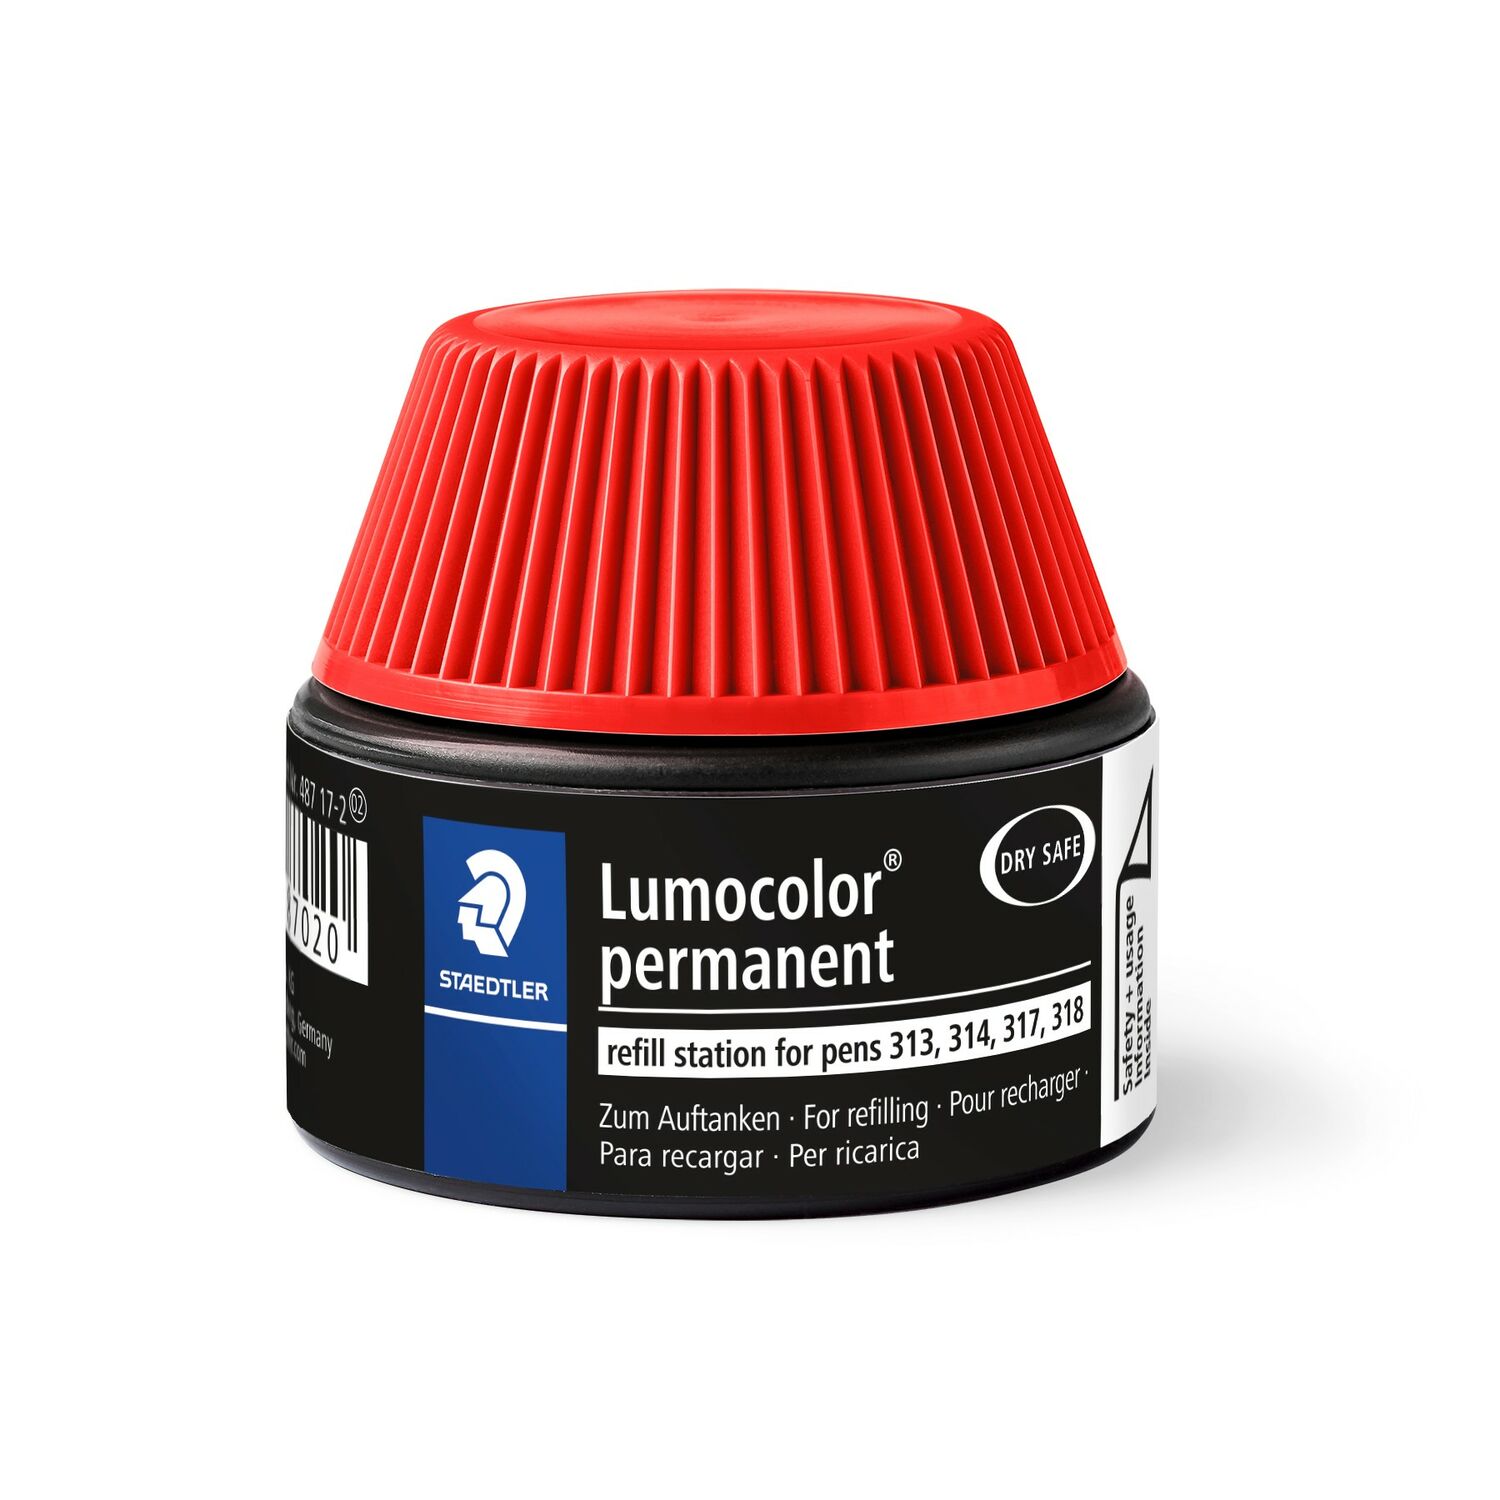 Lumocolor® permanent refill station 487 17 - Refill station for Lumocolor permanent universal pens